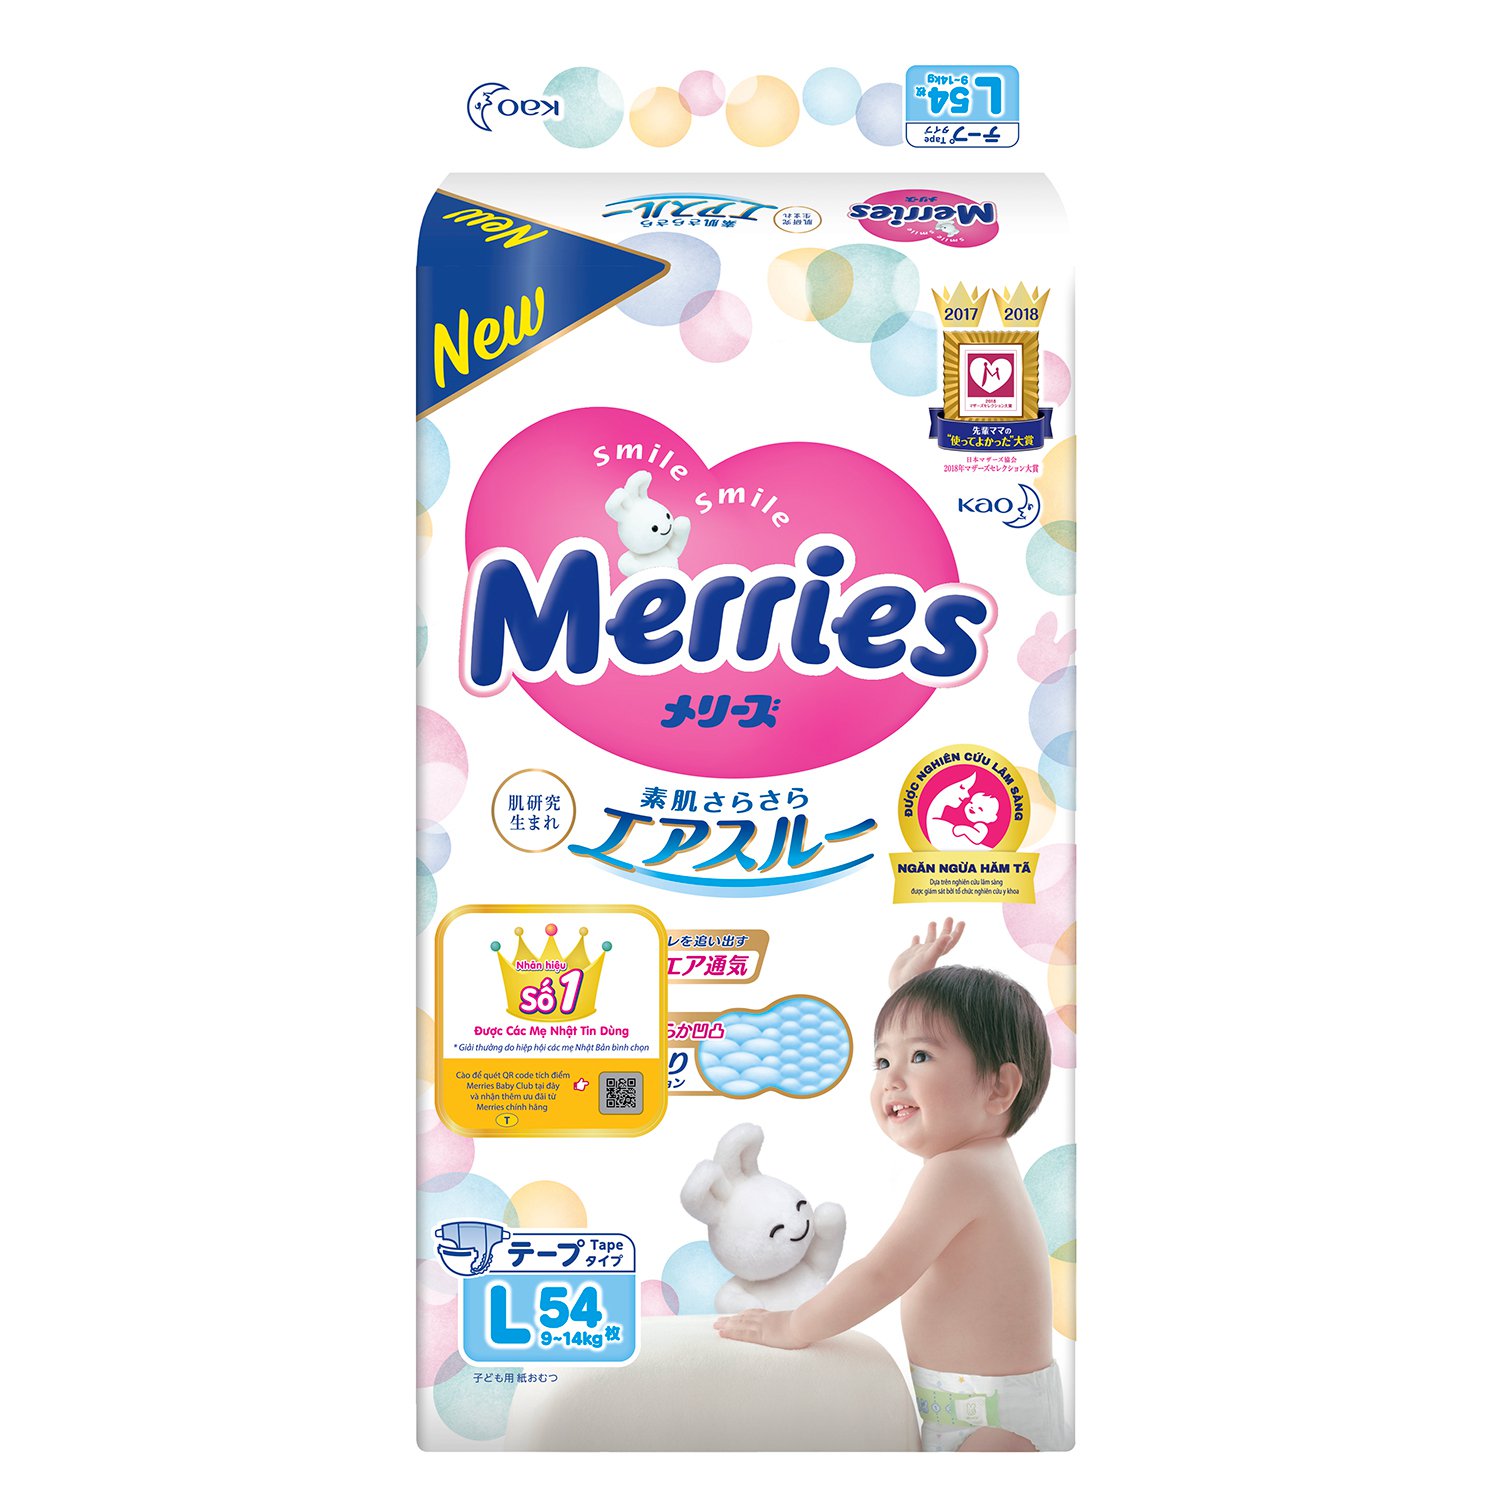 Bỉm - Tã dán Merries tiêu chuẩn size L 54 miếng